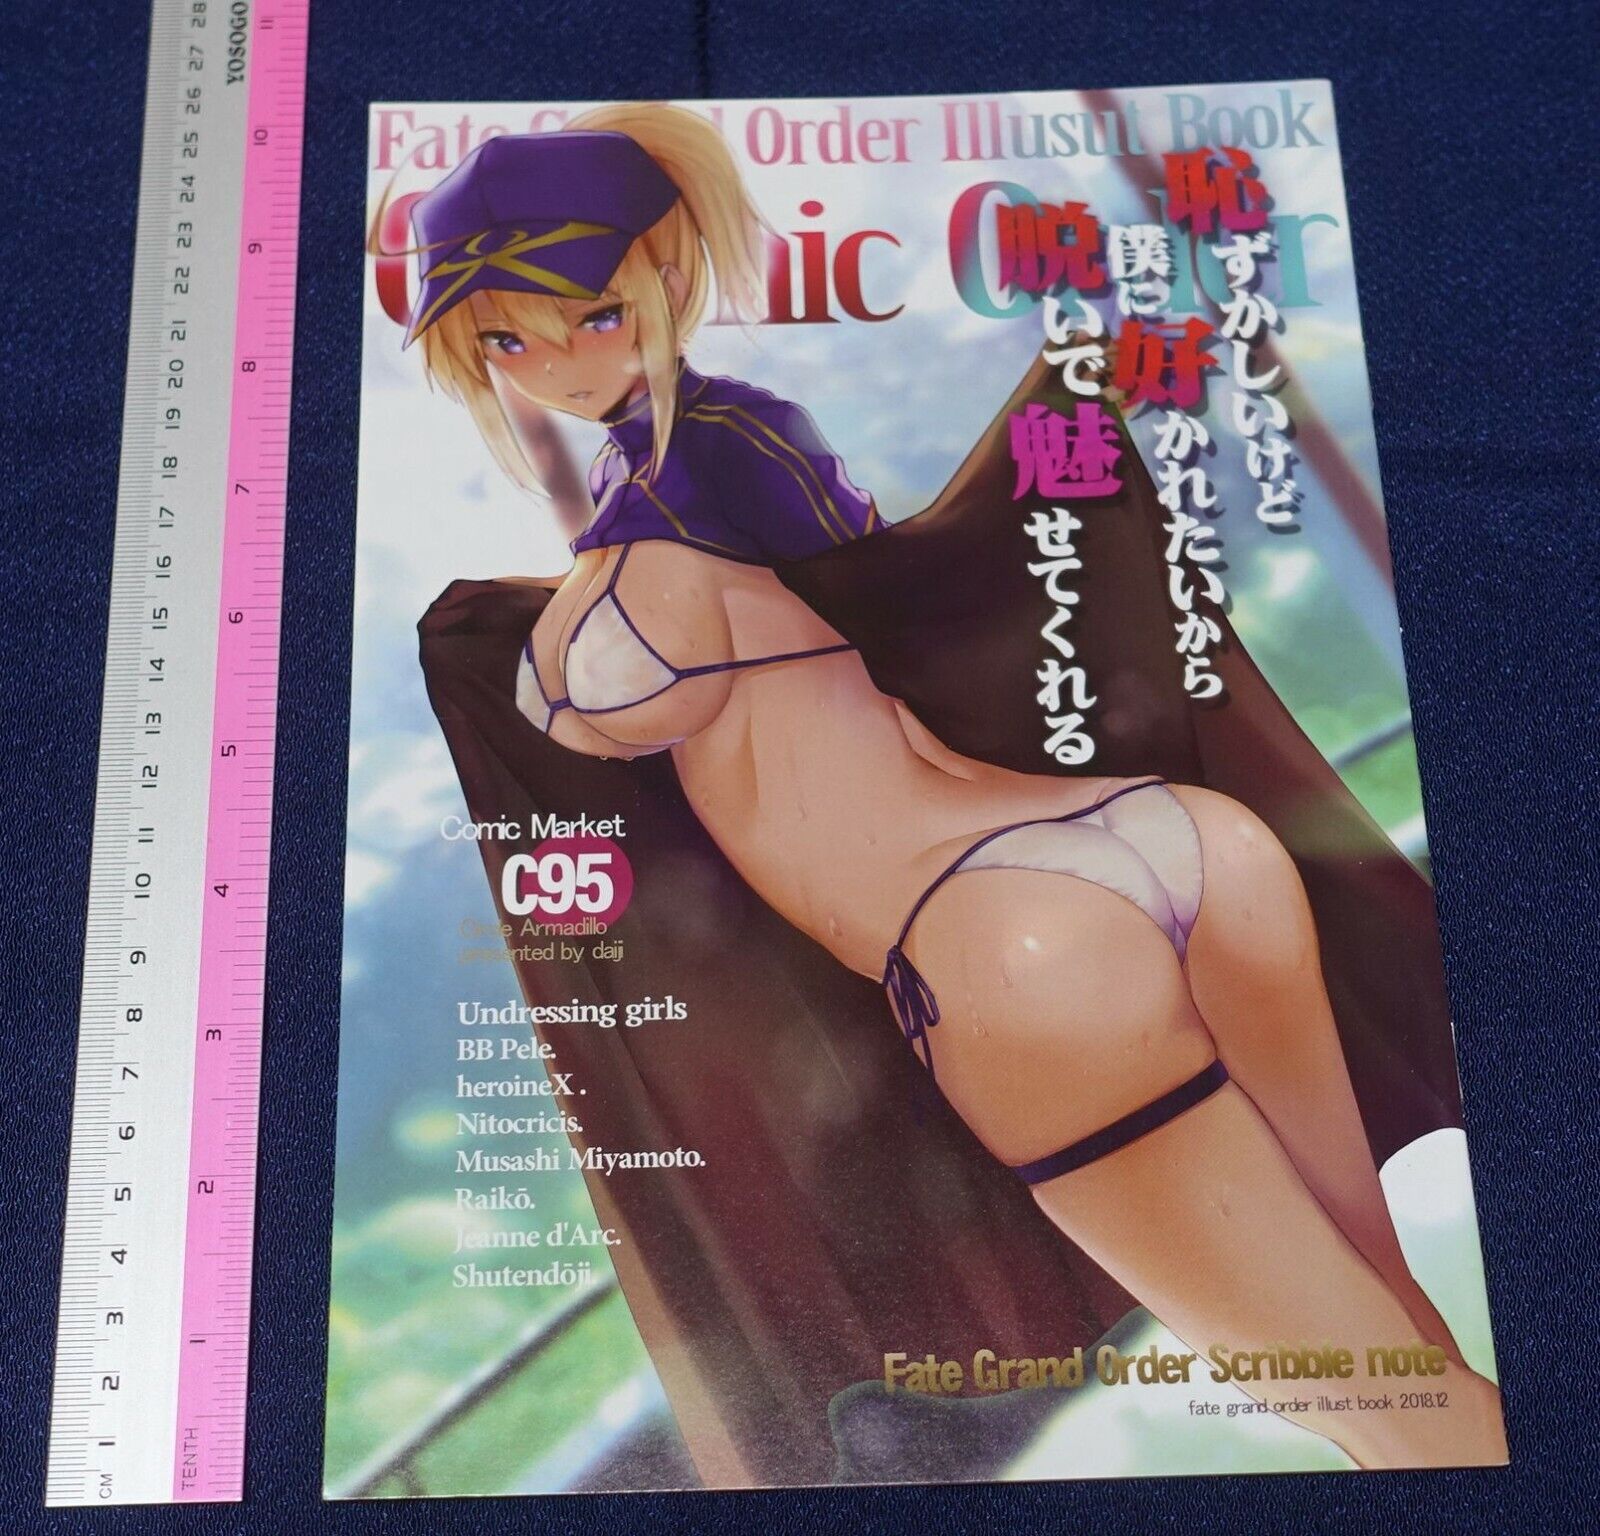 Armadillo daiji Fate FGO Servant Bikini Color Fan Art Book Fate Grand Order C95 